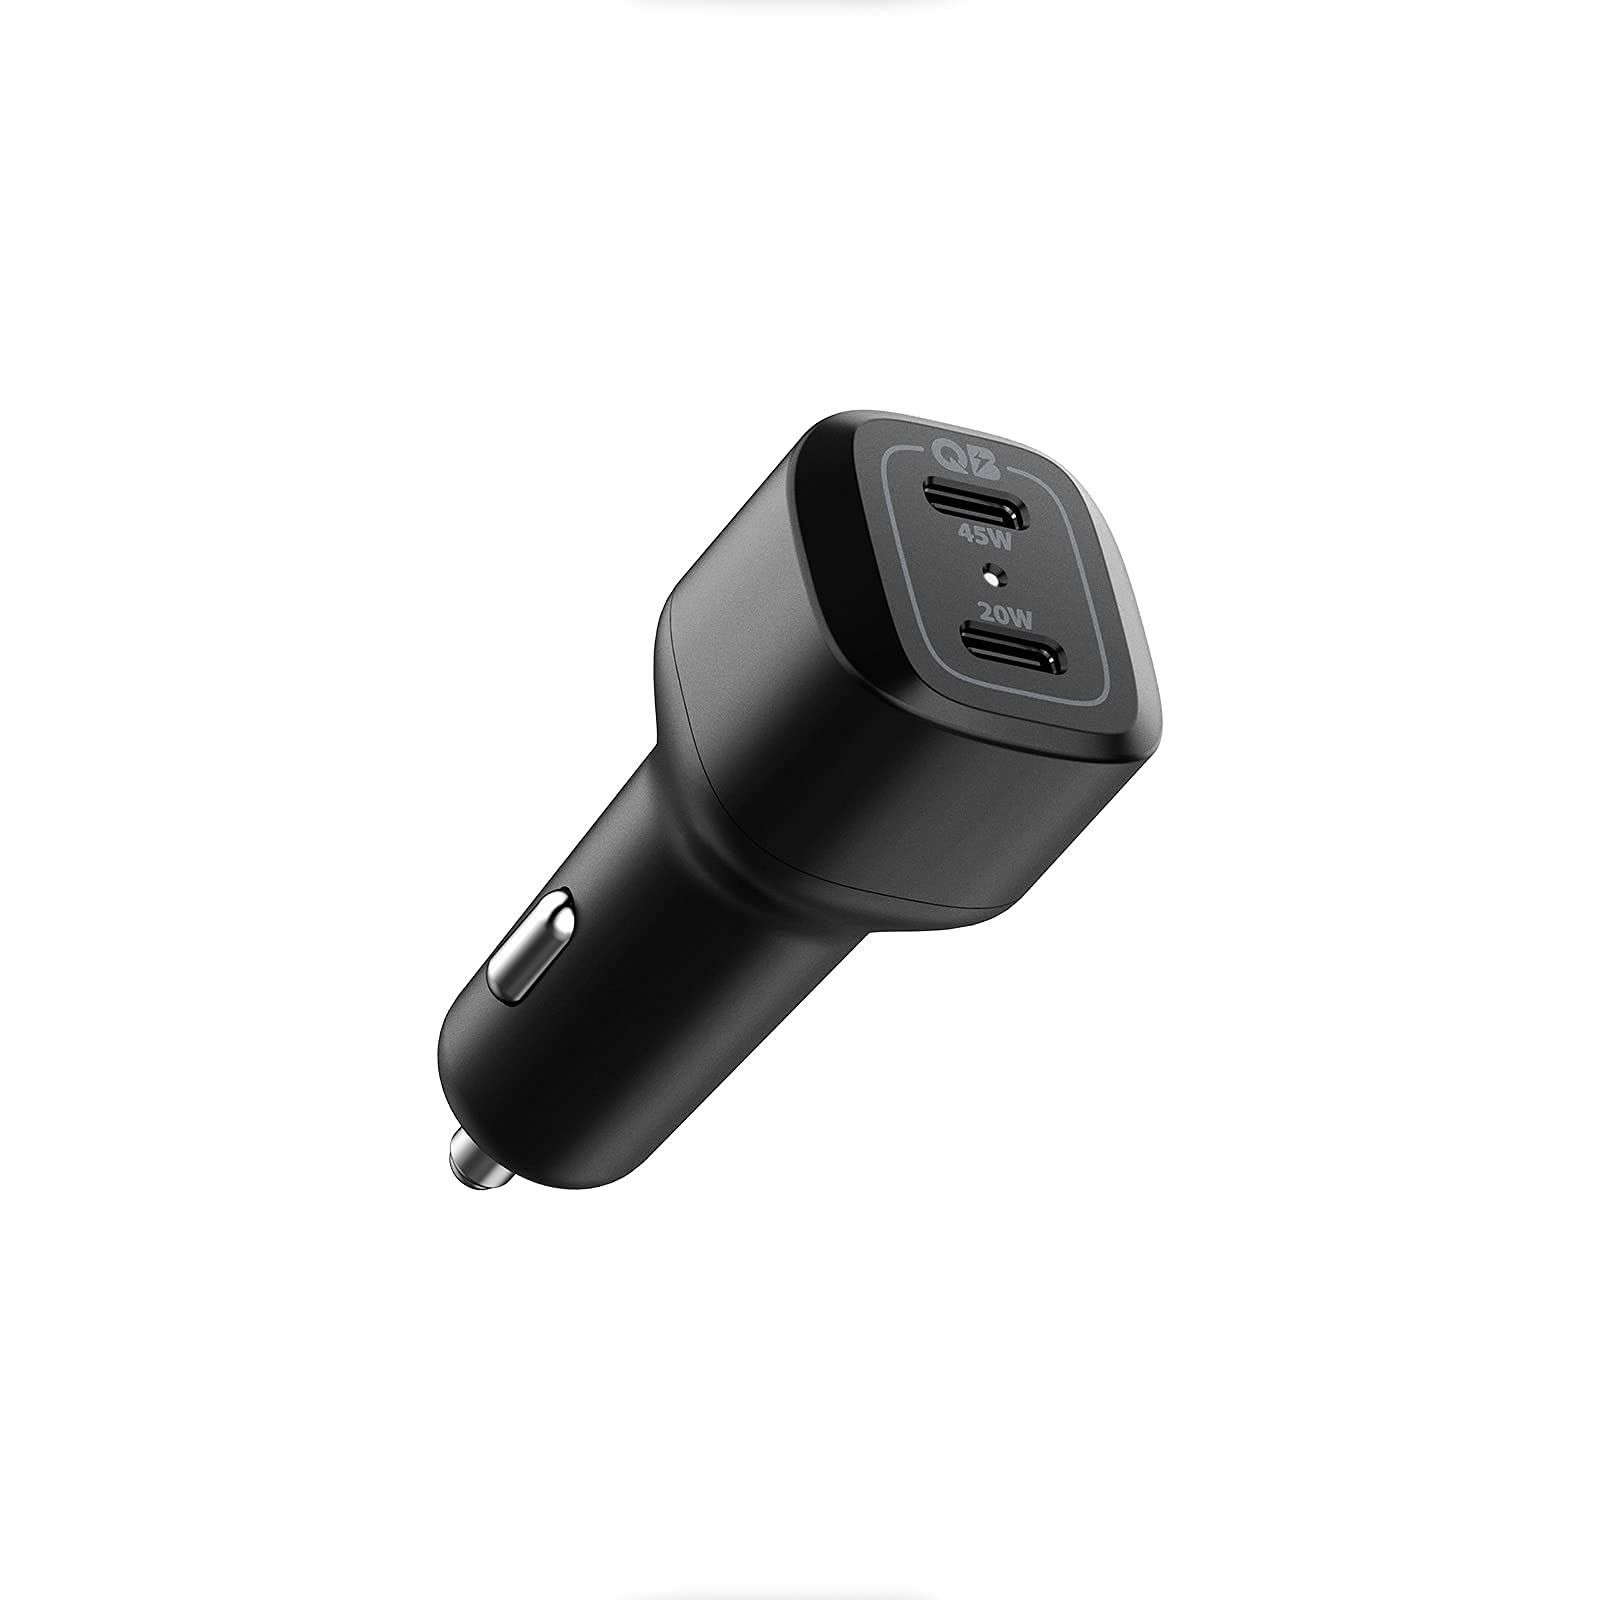 spigen car charger adapter MagSafe 20 watts iPhone 13 MacBook Air  - $19.19 at Spigen via Amazon